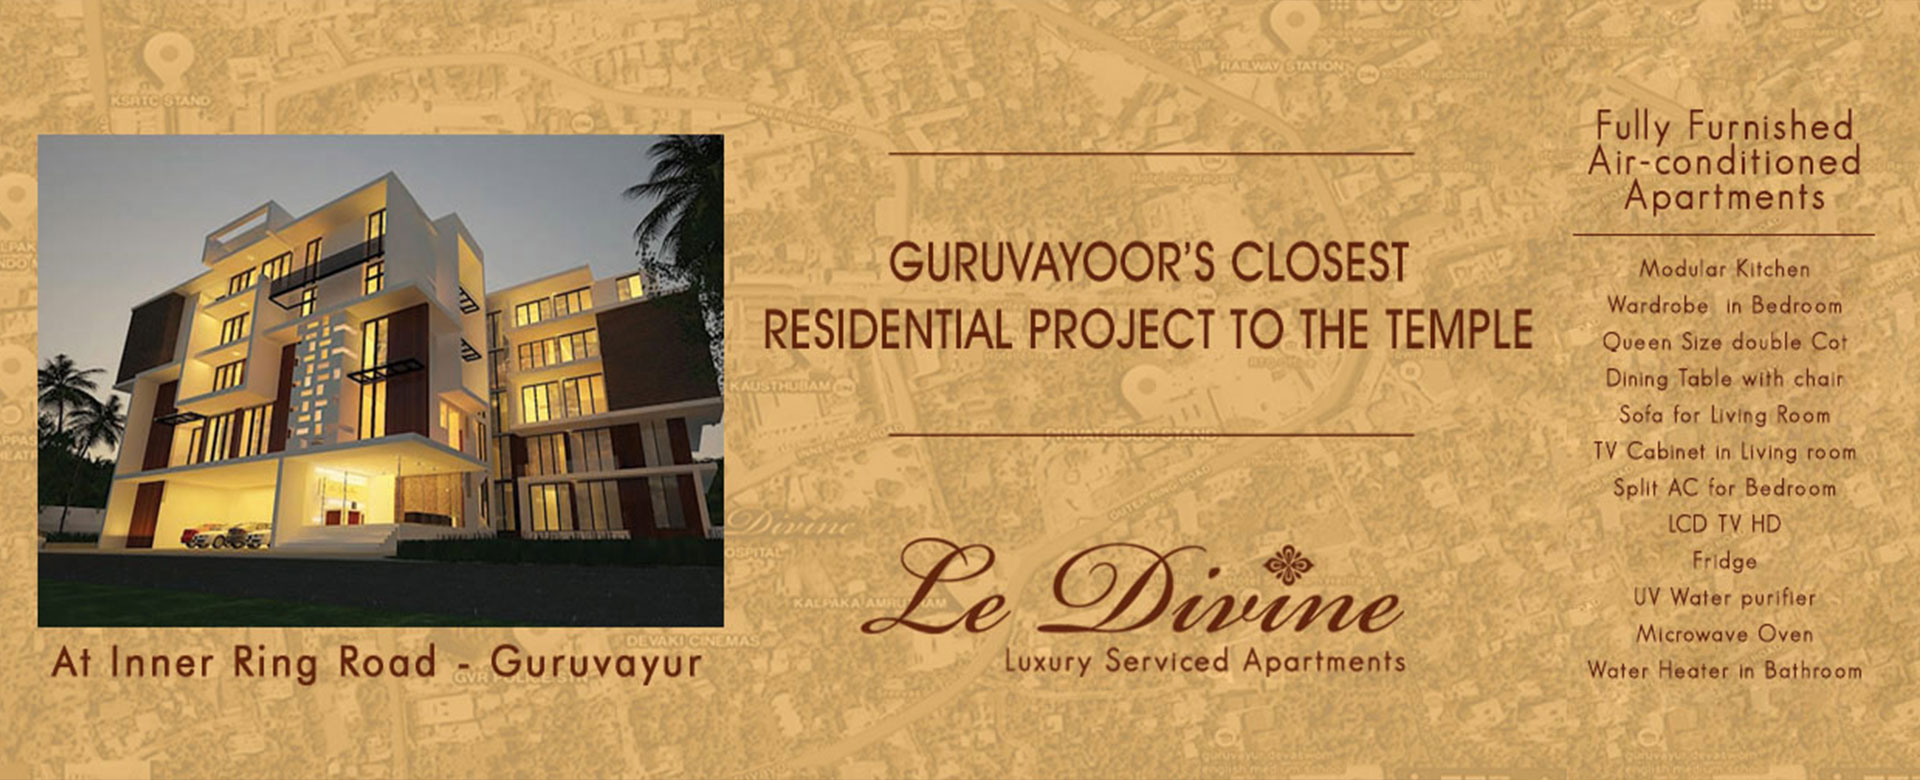 Luxury apartments in guruvayoor, guruvayur 